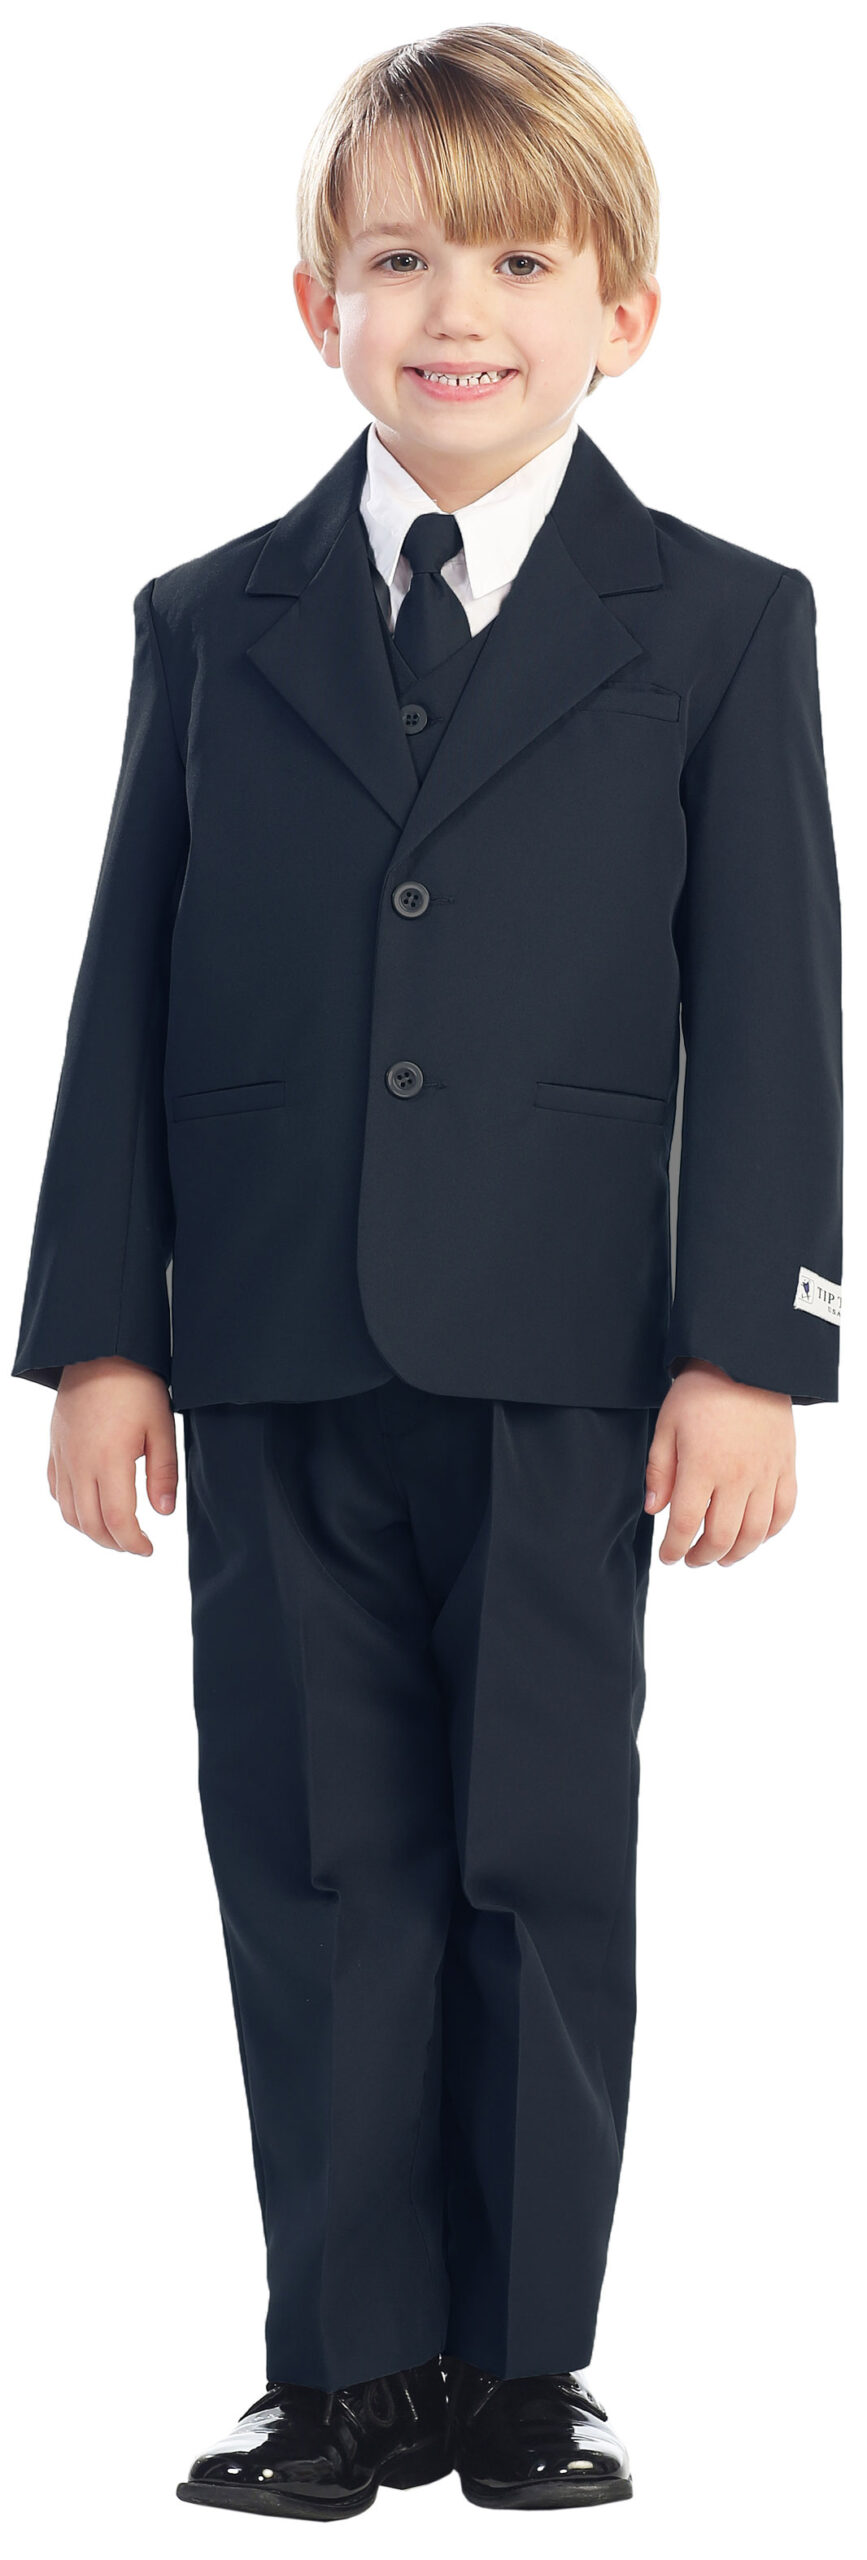 Avery Hill 5-Piece Boy's 2-Button Dress Suit Full-Back Vest - Navy Blue Size 4